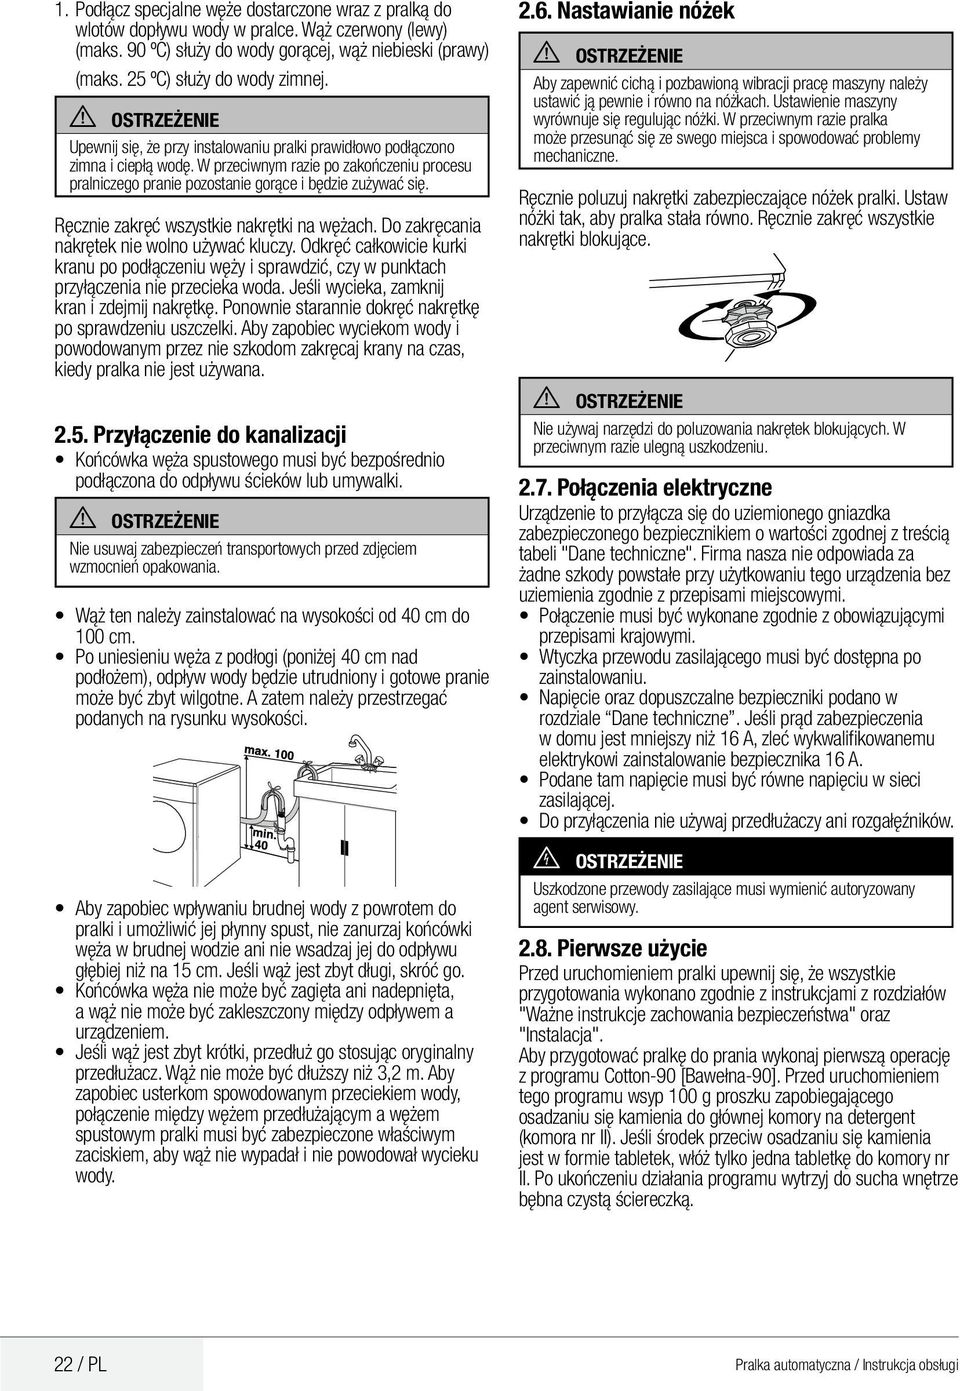 On the verge Egyptian rejection Pralka automatyczna Instrukcja obsługi - PDF Free Download